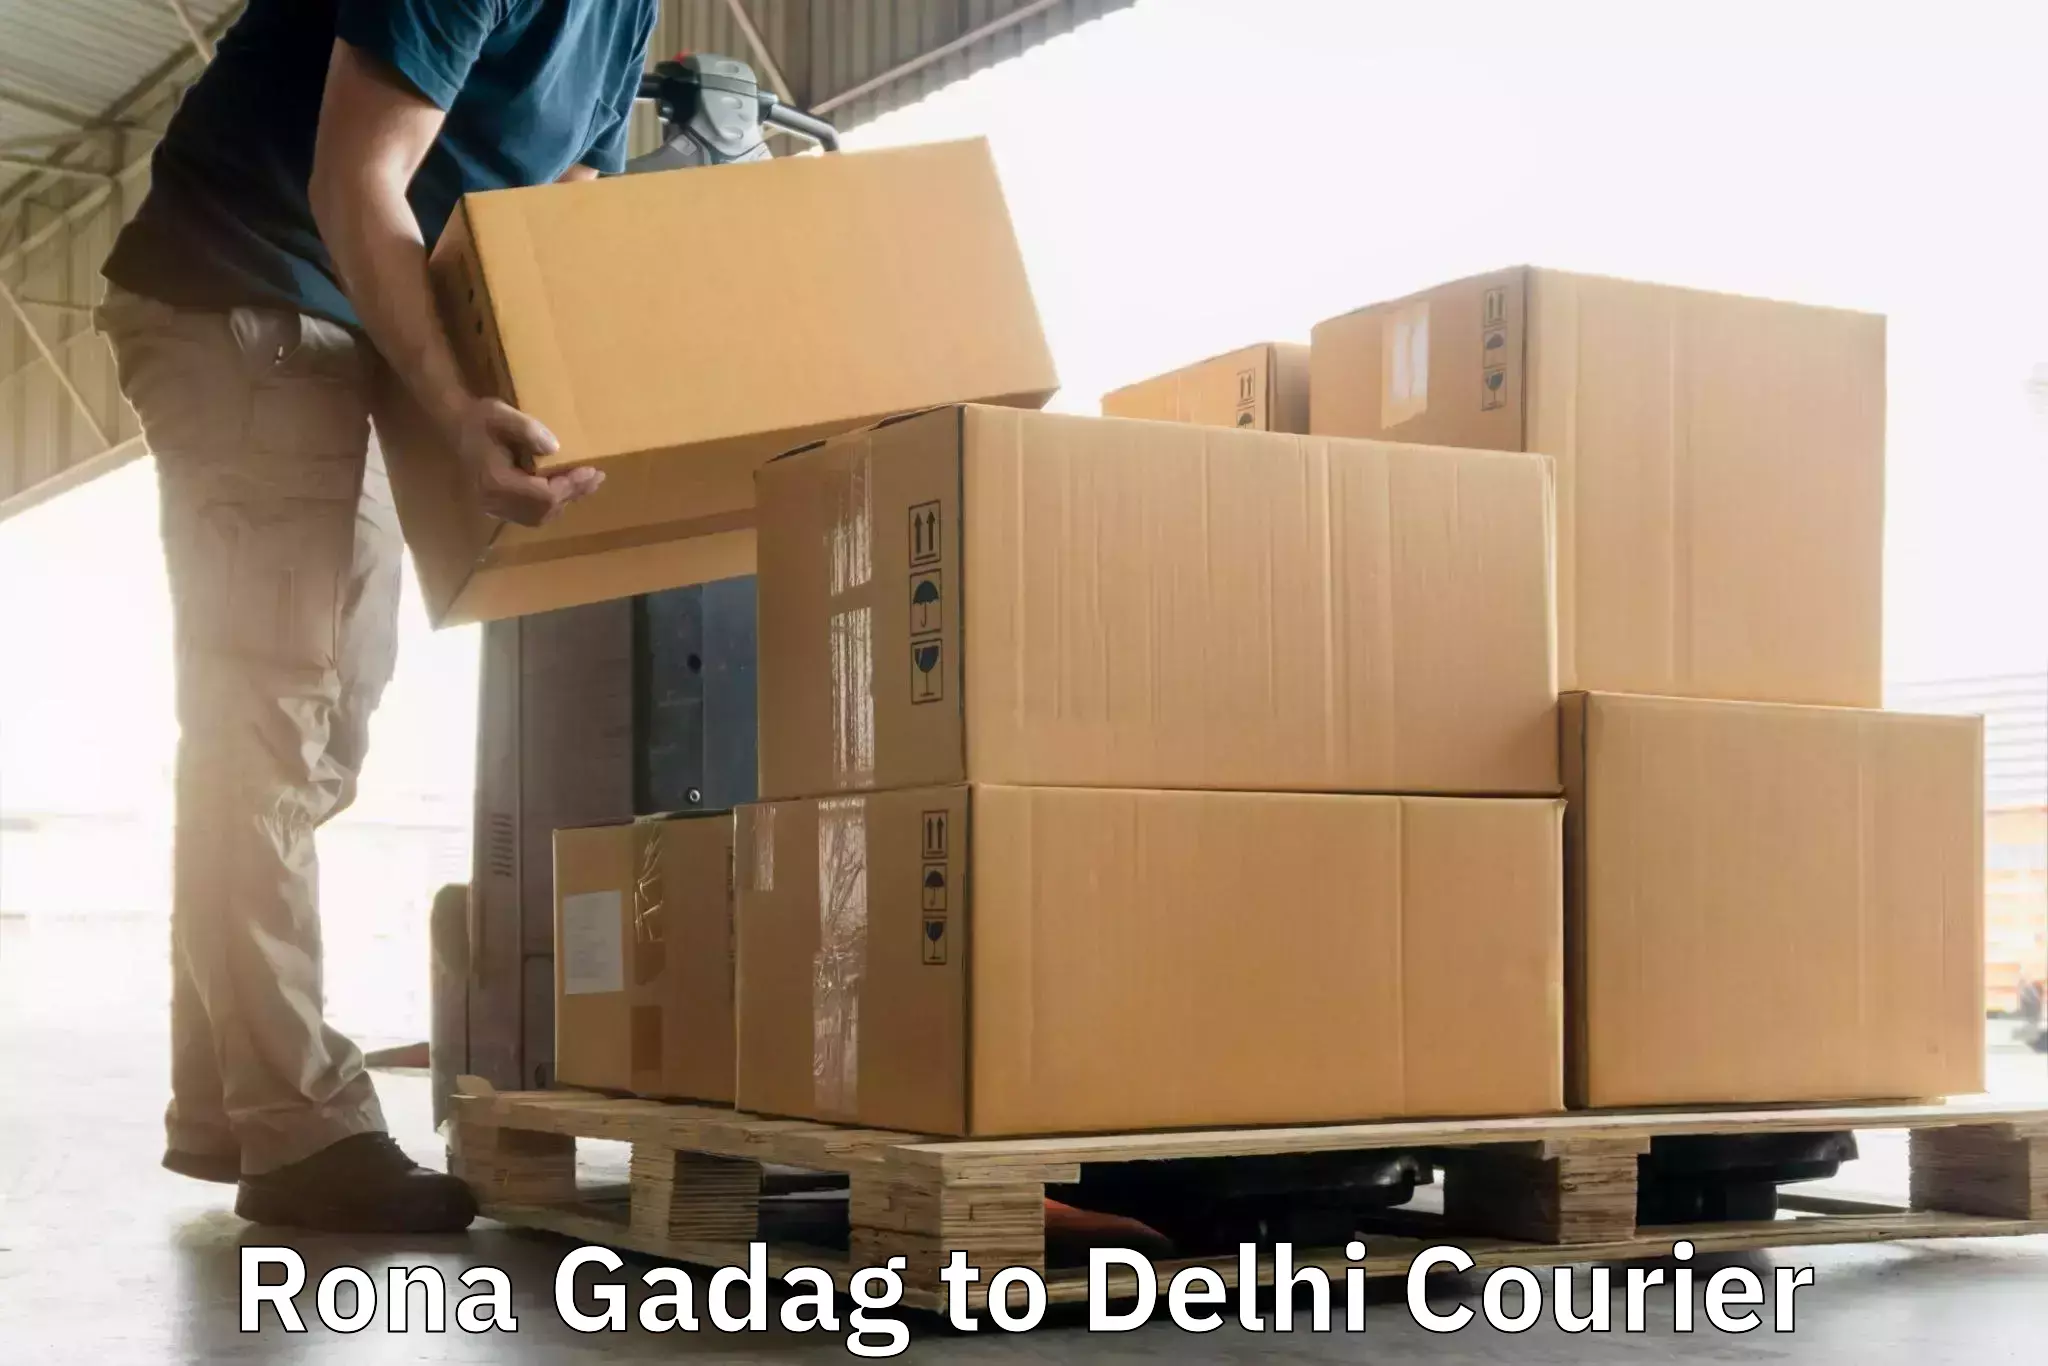 Doorstep delivery service Rona Gadag to NIT Delhi